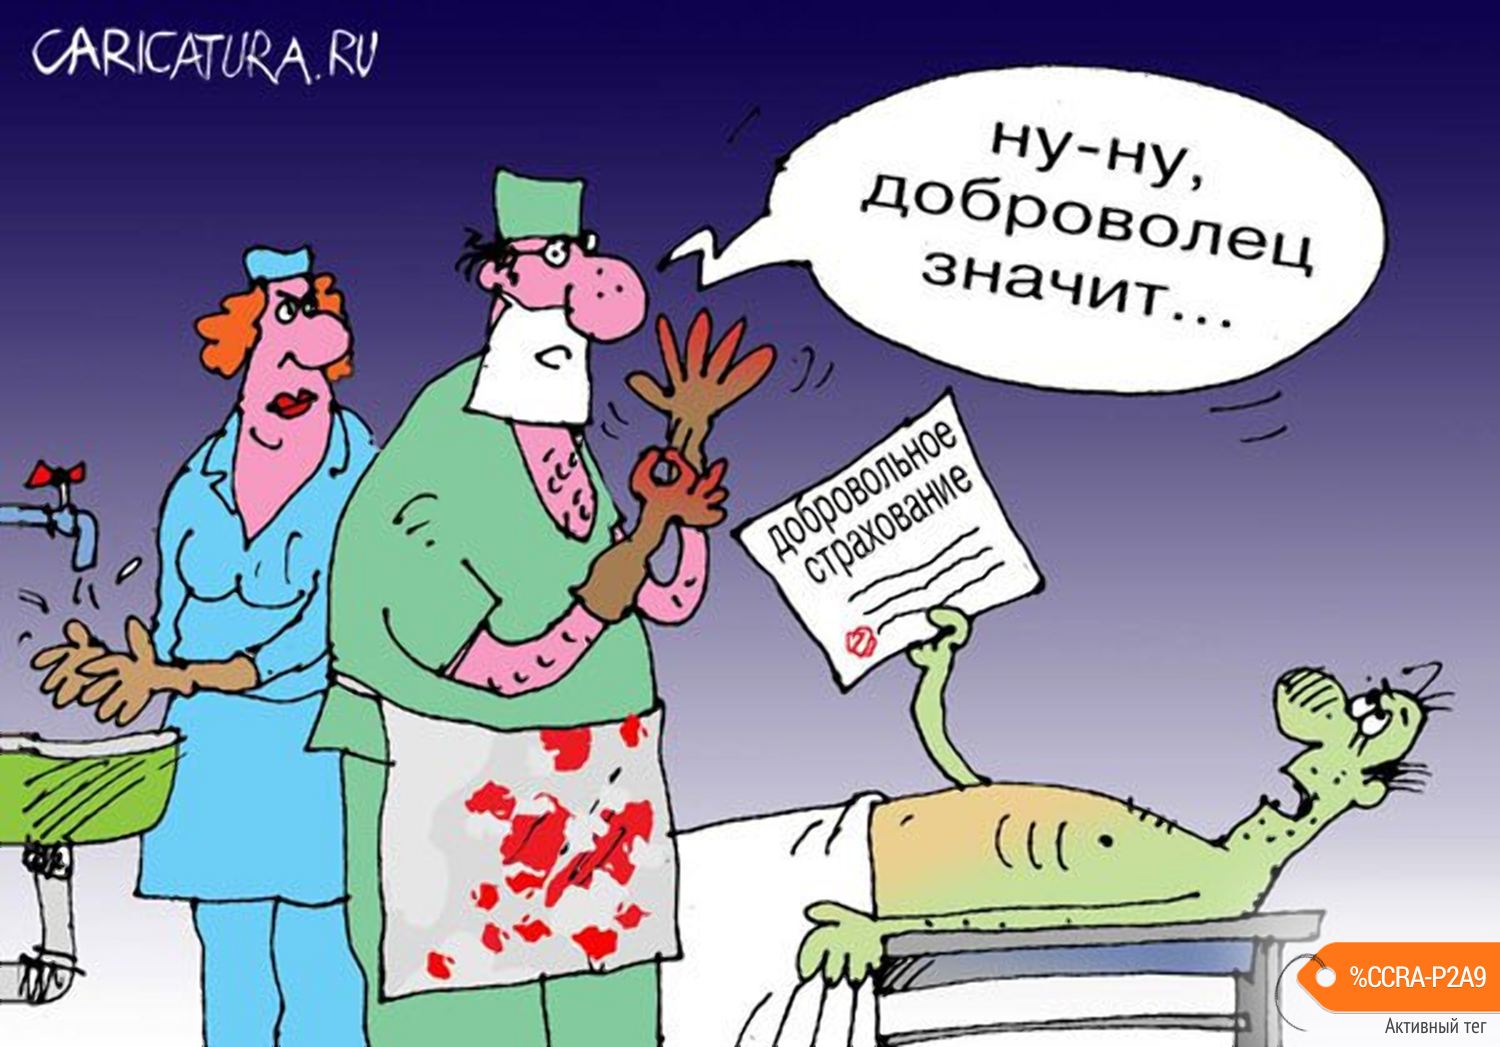 Карикатура "Очень застраховано: Добровольное страхование", Сергей Кокарев